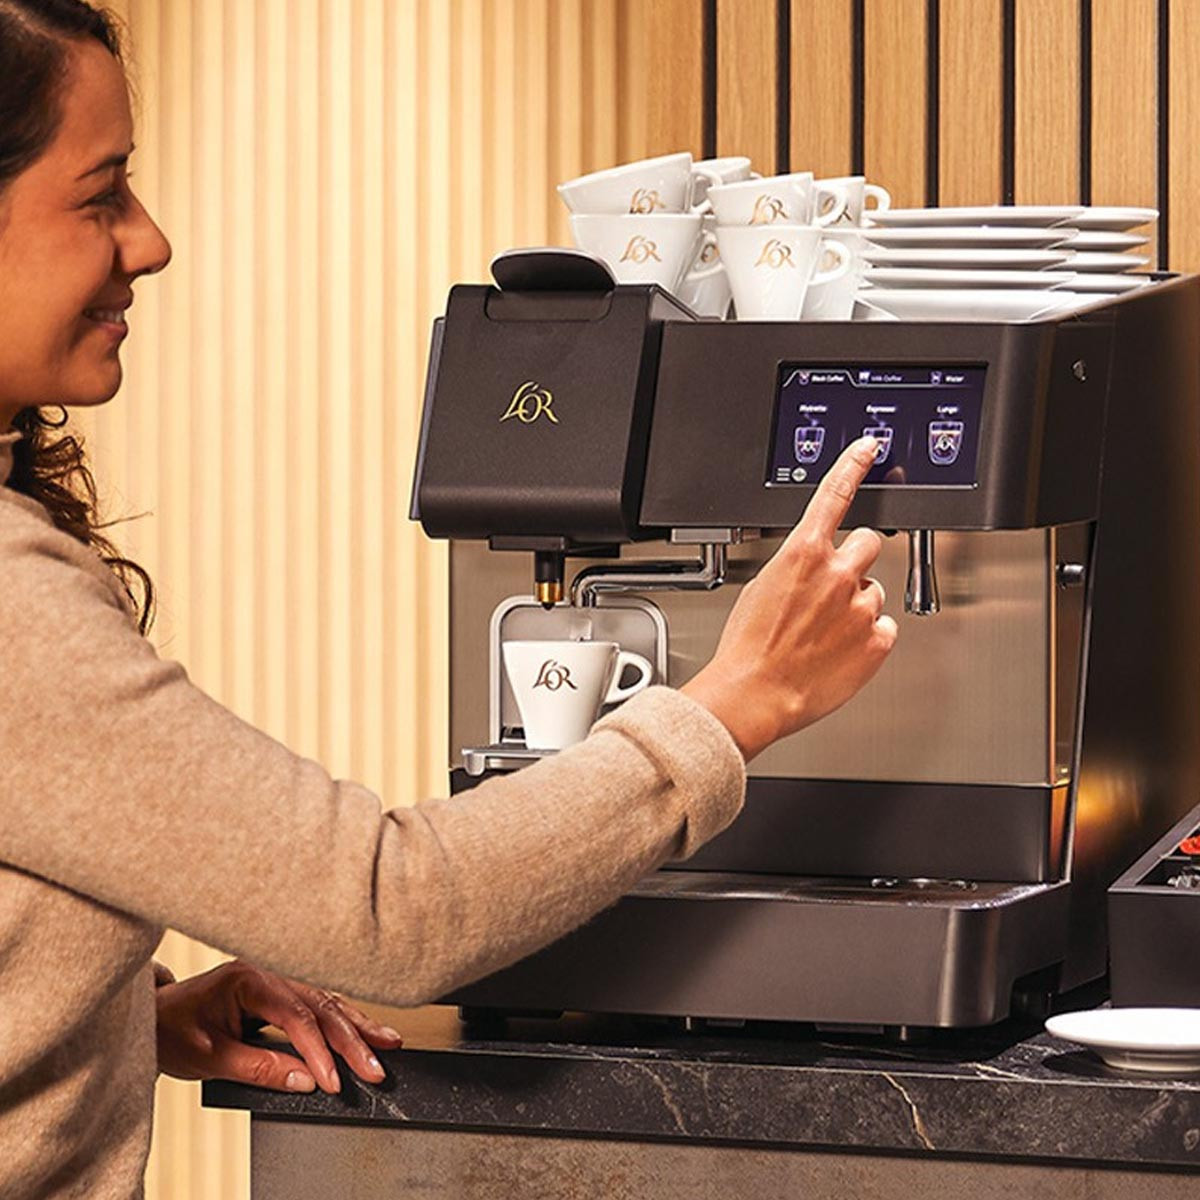 Machine à café Nespresso PRO L'Or supreme capsules de café professionnelles